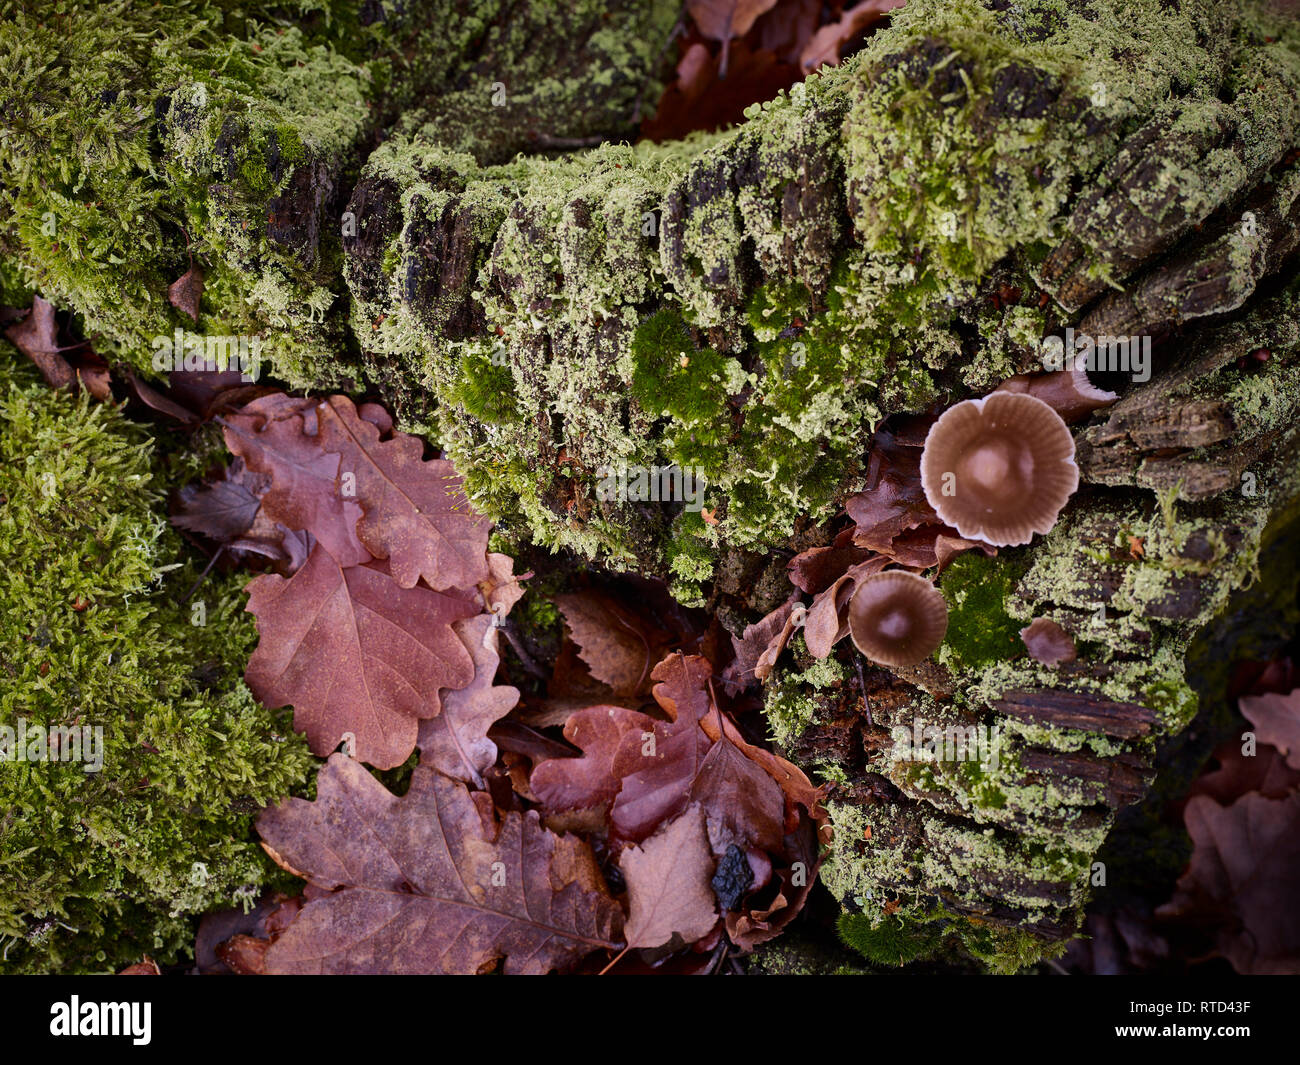 Résumé de la couverture morte avec souche d'arbre en décomposition, de champignons colorés et feuilles mortes Banque D'Images